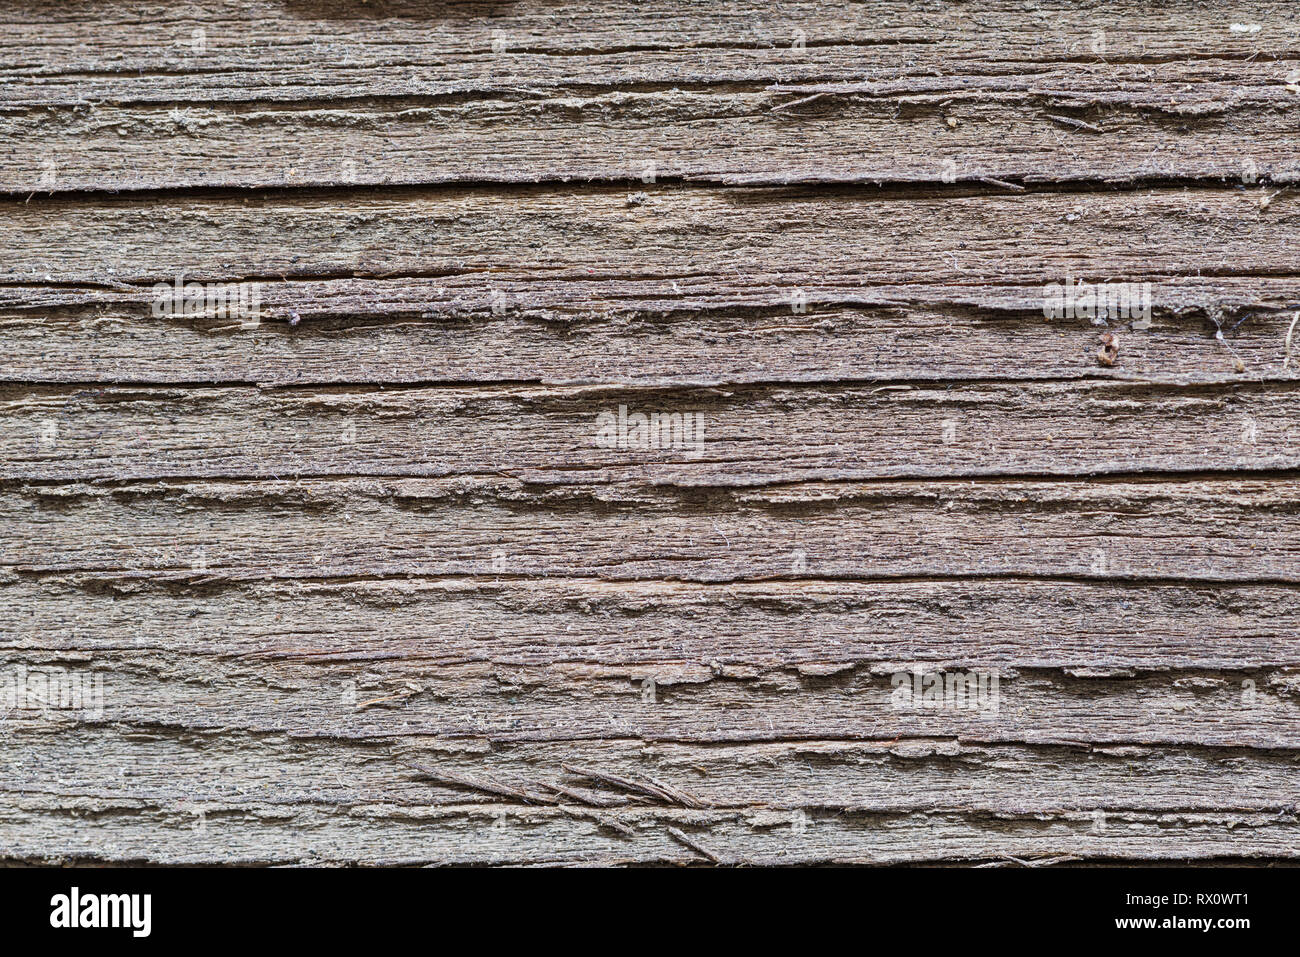 En bois gris patiné fortement close up texture de fond Banque D'Images